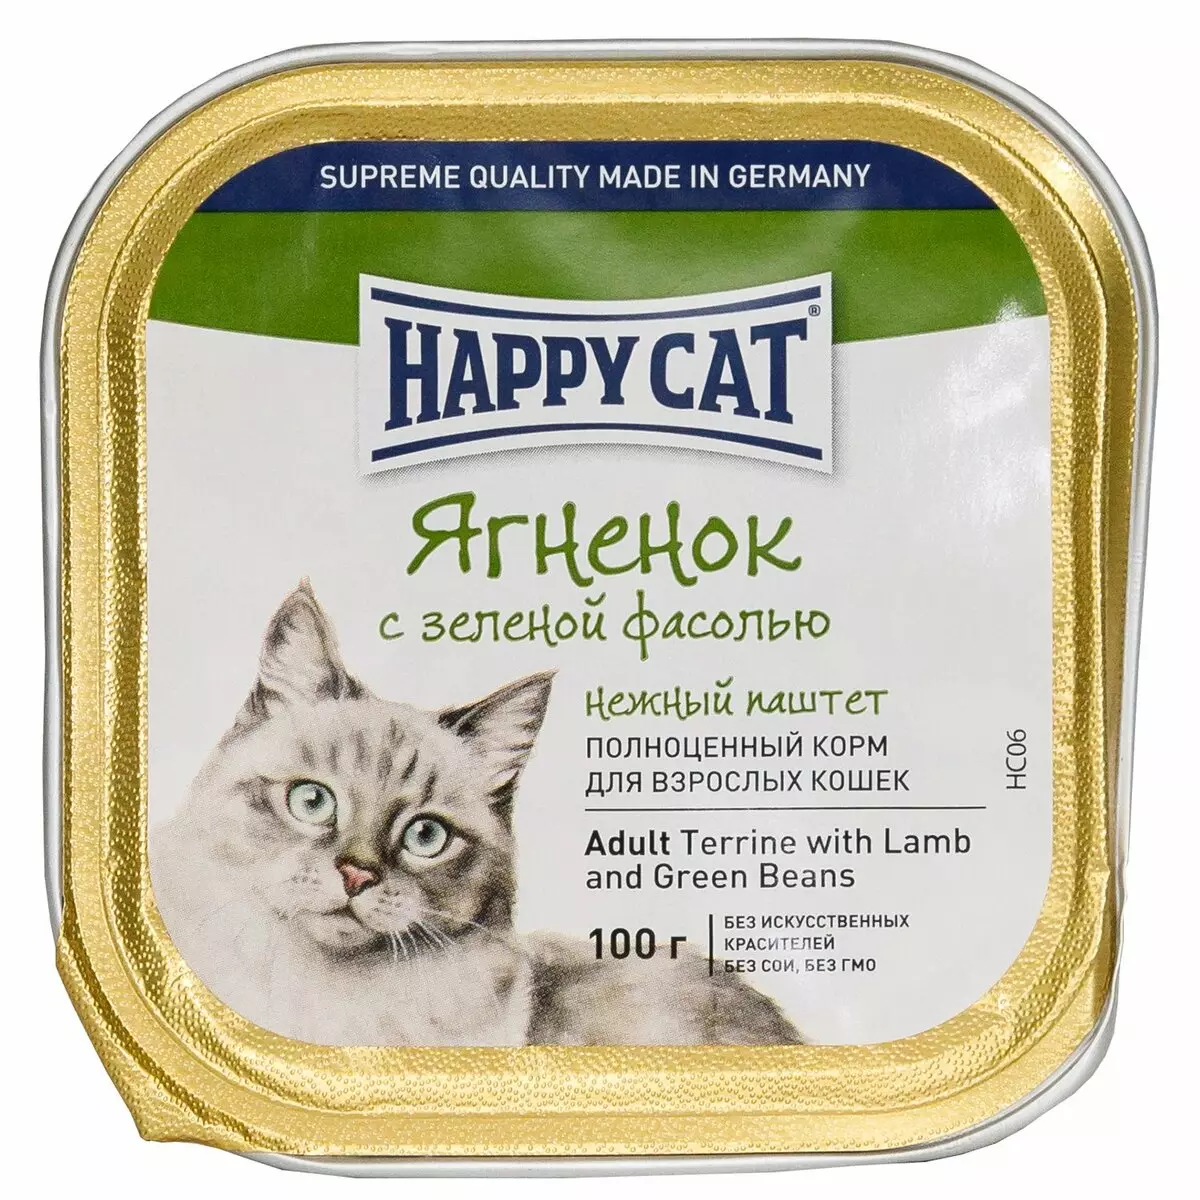 Happy Cat Cat Feed: de gearstalling fan wiet en droech iten foar kittens en sterilisearre katten, iten foar catrated katten. Resinsjes fan beoordelingen 22070_31